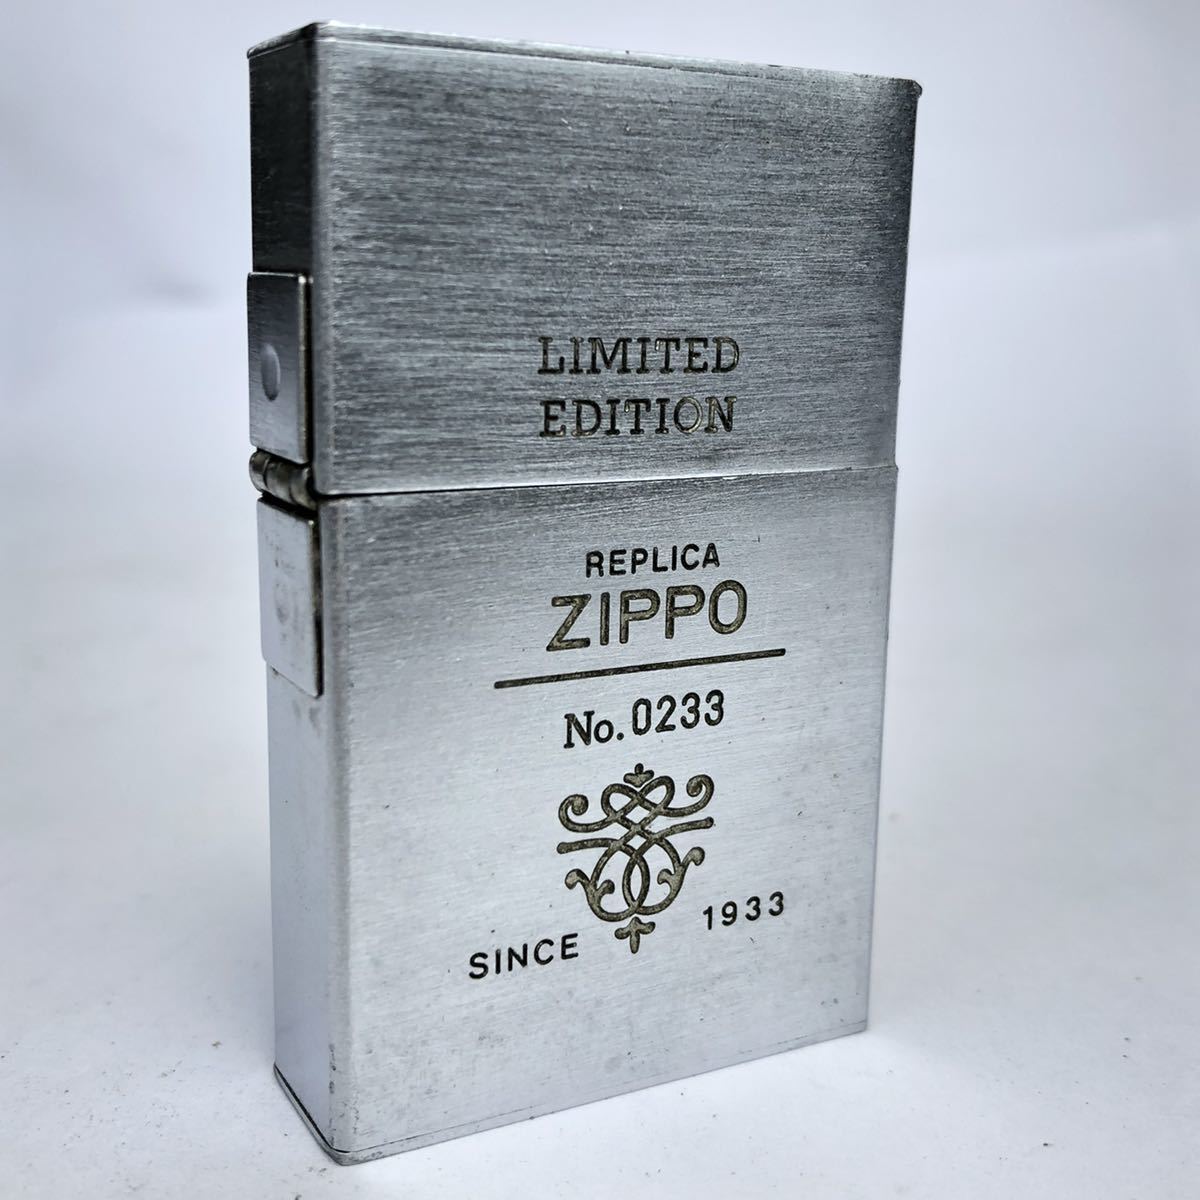 ヤフオク! -「zippo 1933 replica」の落札相場・落札価格